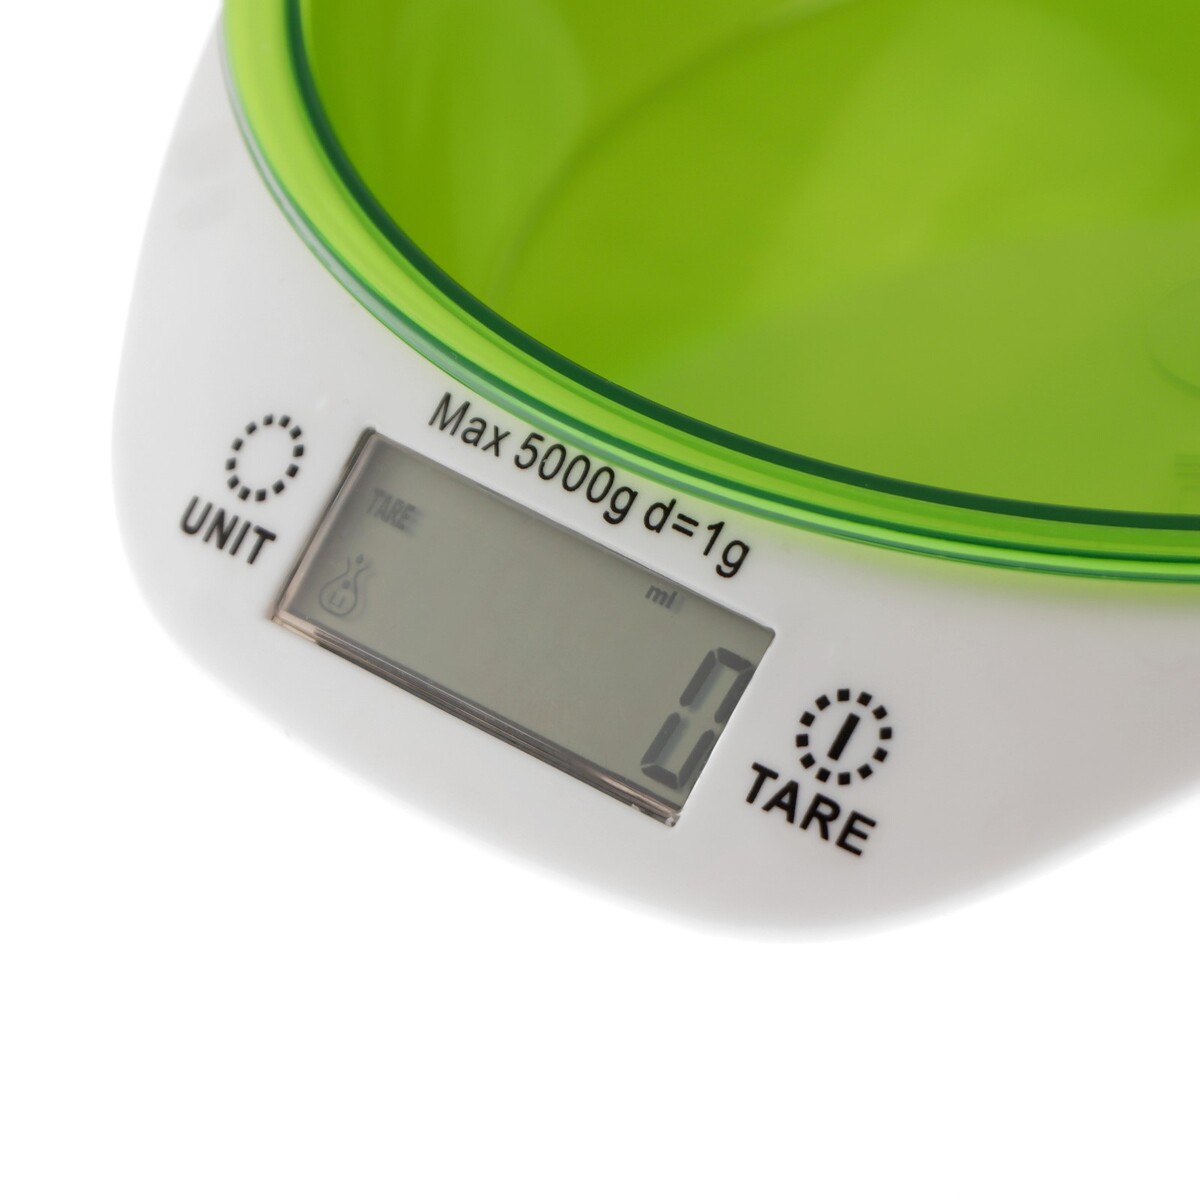 фото Весы кухонные luzon lkvb-501, электронные, до 5 кг, чаша 1.3 л, зеленые luazon home